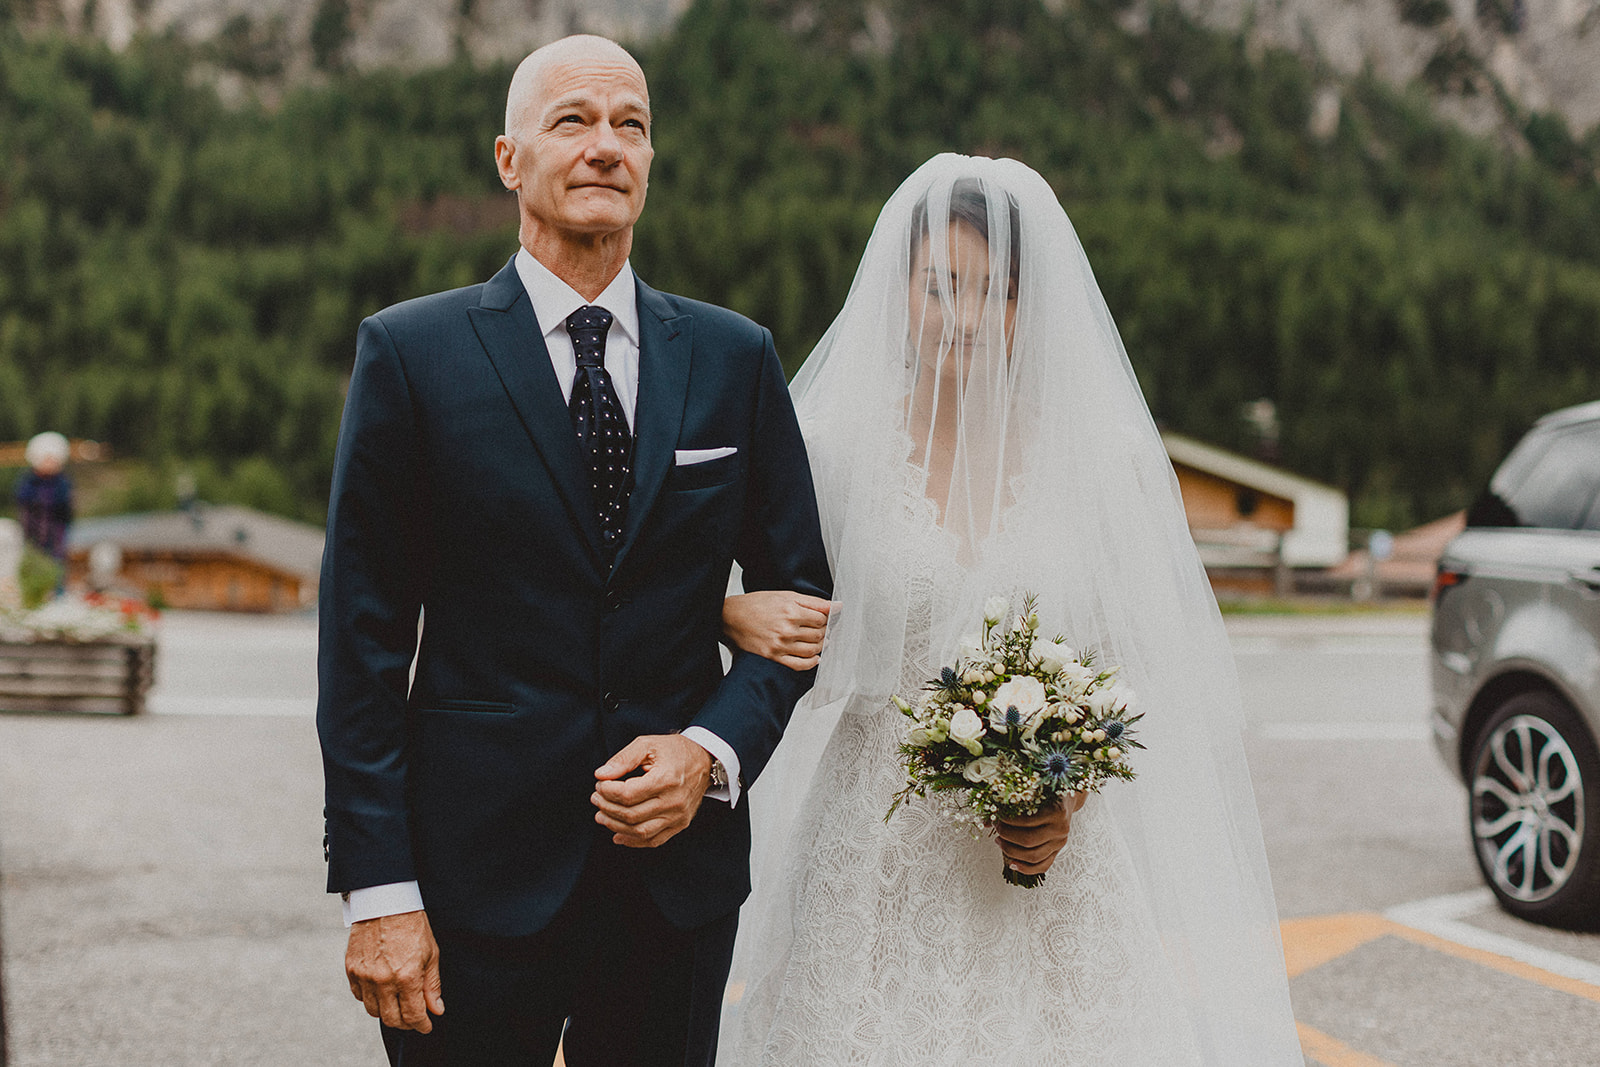 Esclusivo-matrimonio in Baita sulle Dolomiti. Livio Lacurre Fotografo.